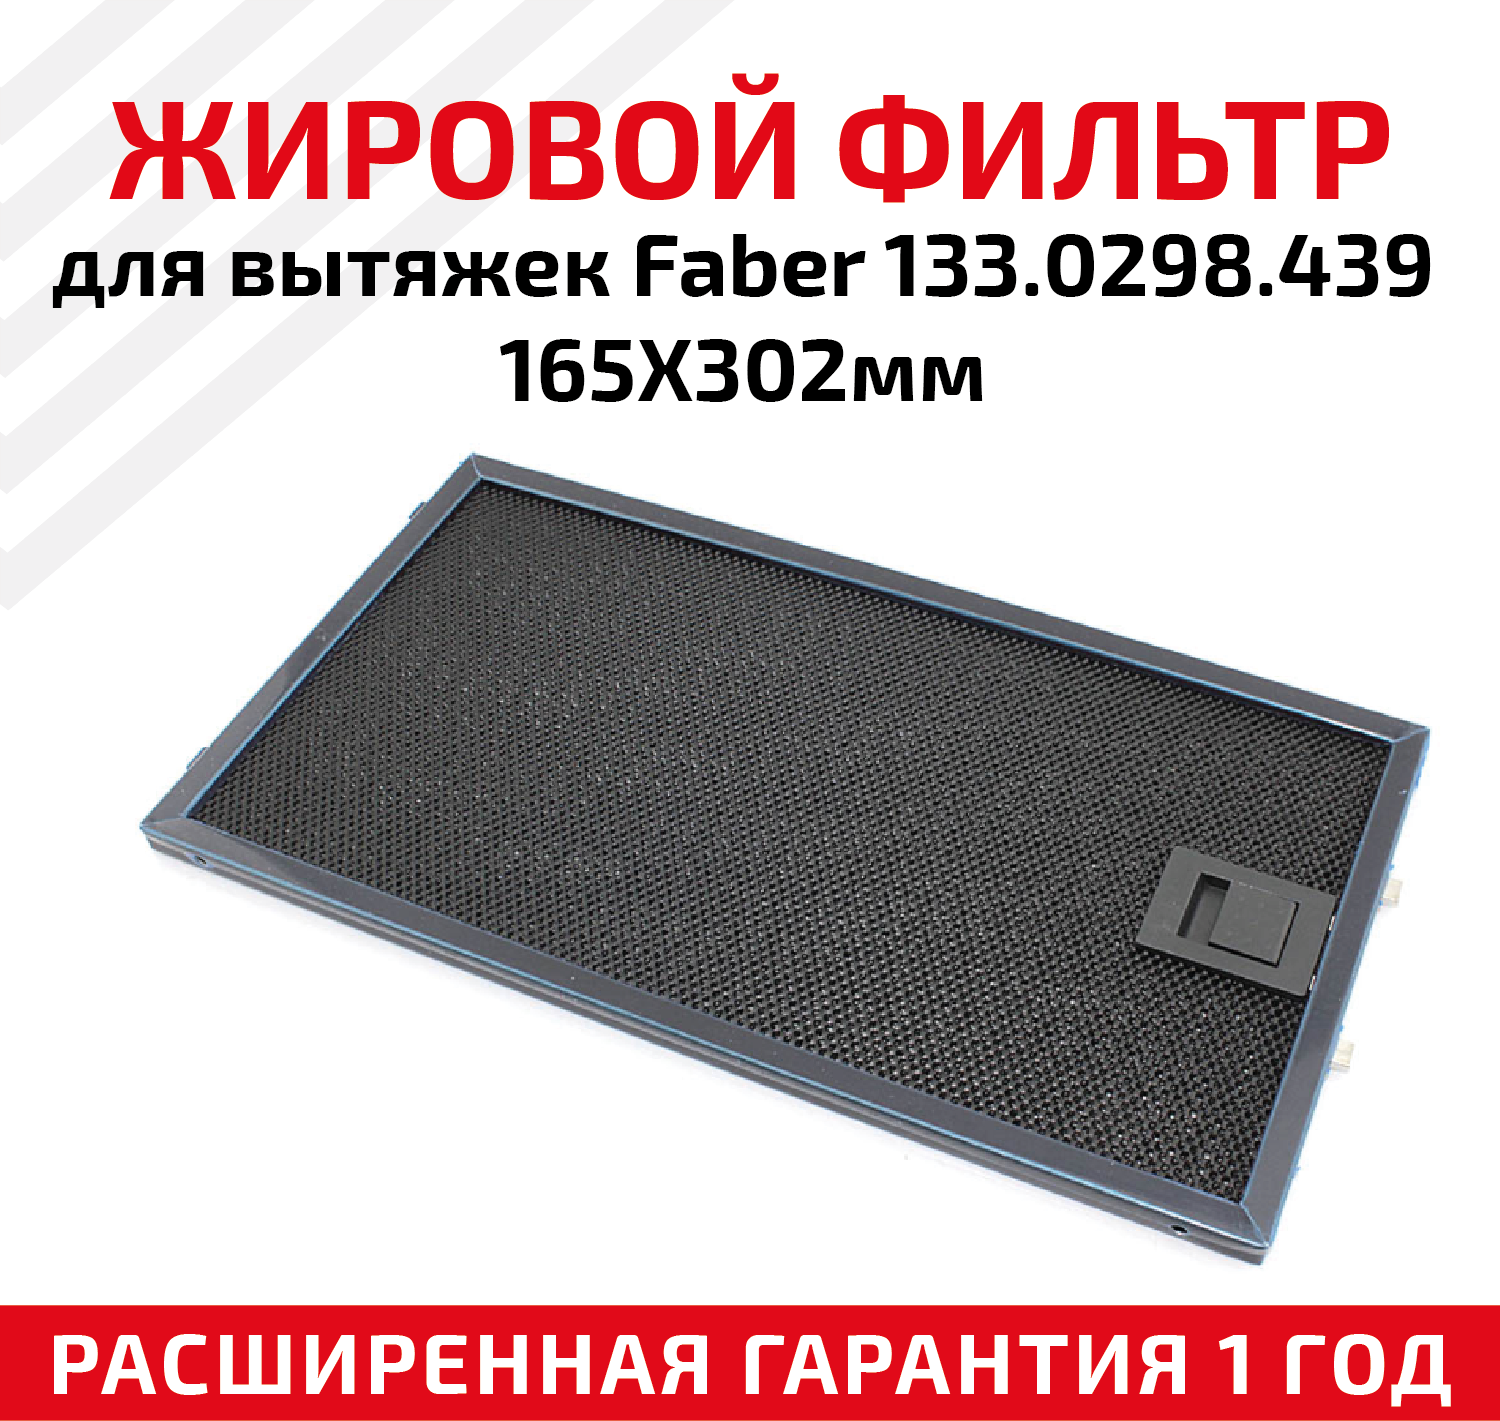 Жировой фильтр (кассета) алюминиевый (металлический) рамочный для кухонных вытяжек Faber 133.0298.439, многоразовый, 165х302мм